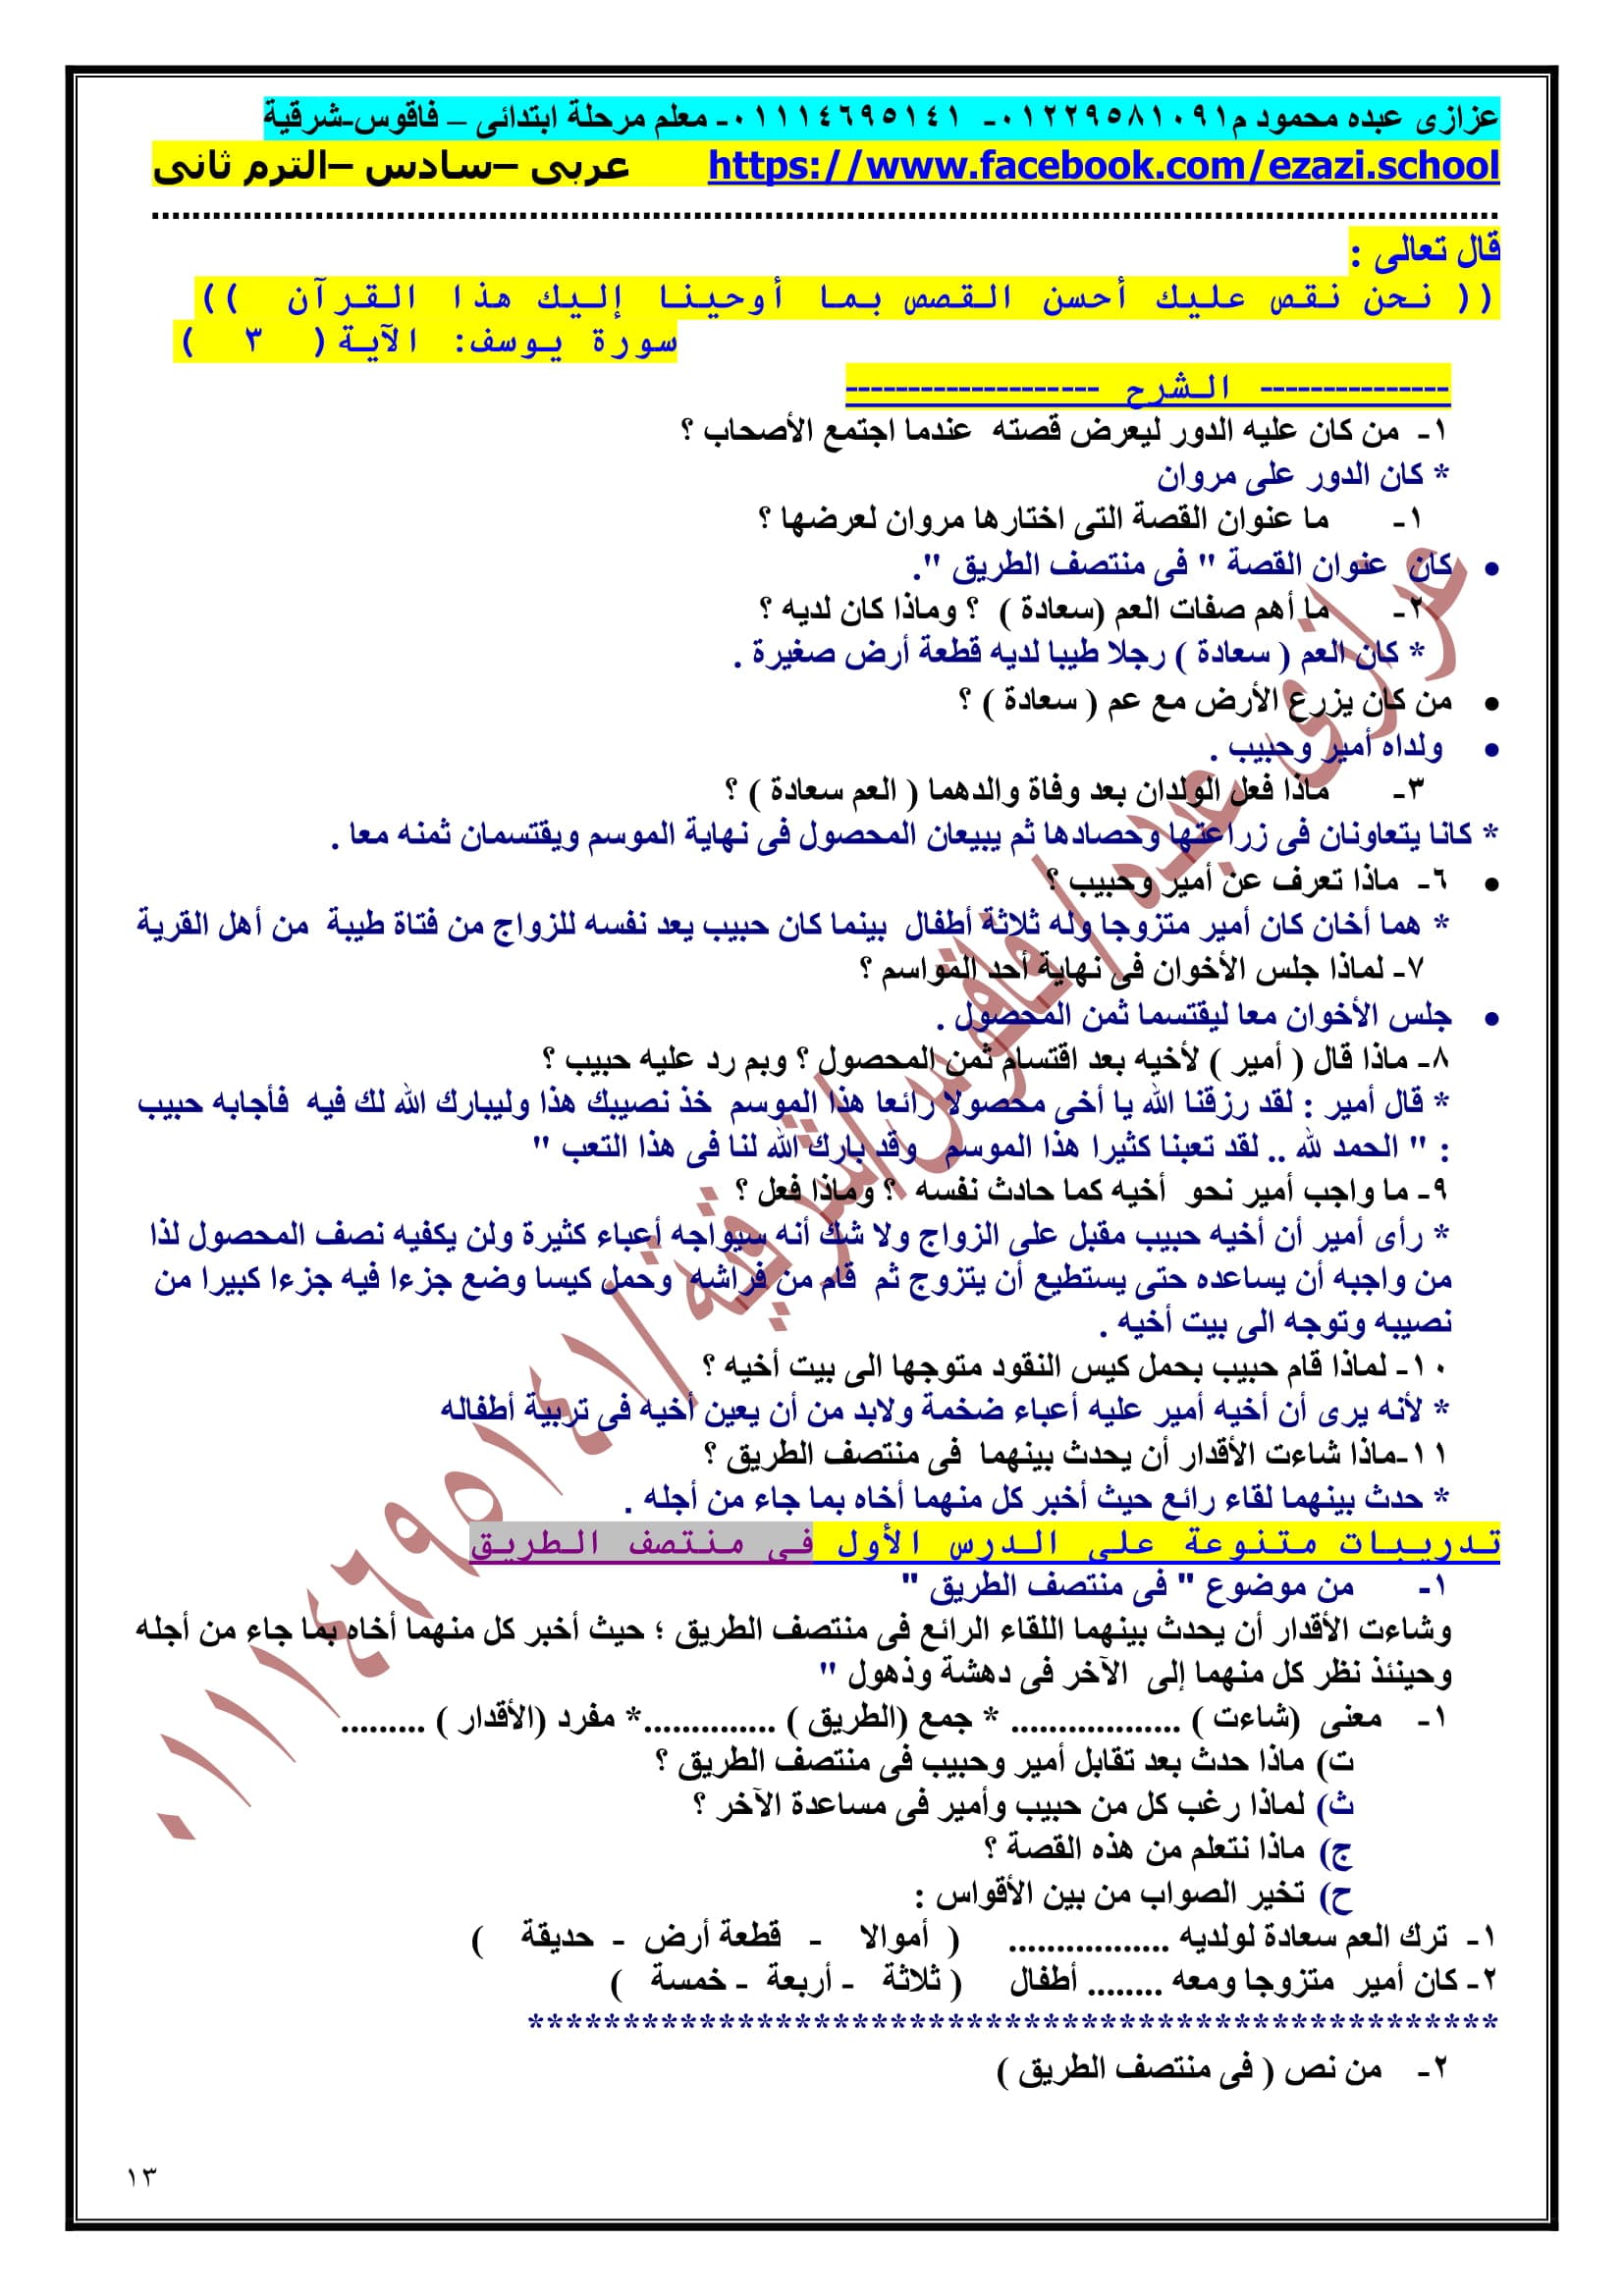 مراجعة ليلة الامتحان فى اللغة العربية للصف السادس الابتدائى الترم الثانى